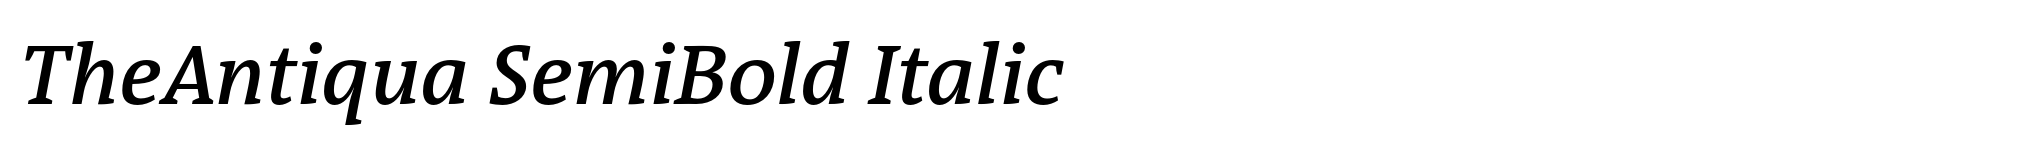 TheAntiqua SemiBold Italic image